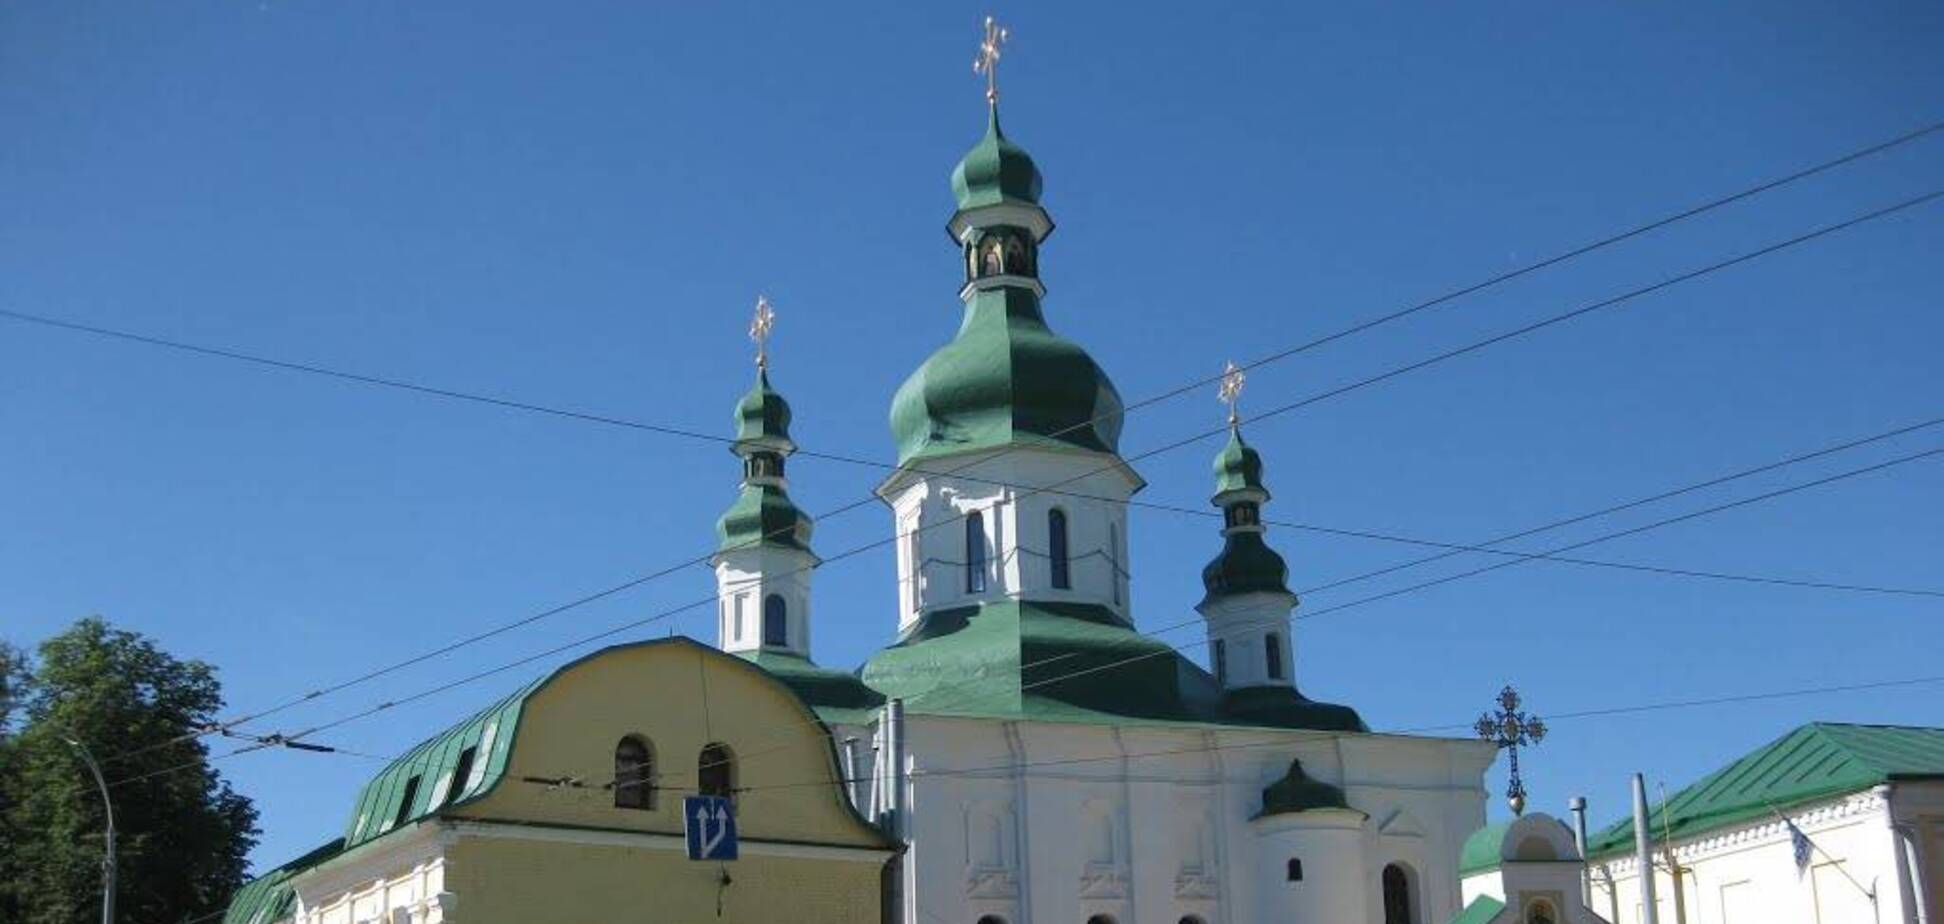 Свято-Феодосиевский мужской монастырь в Киеве